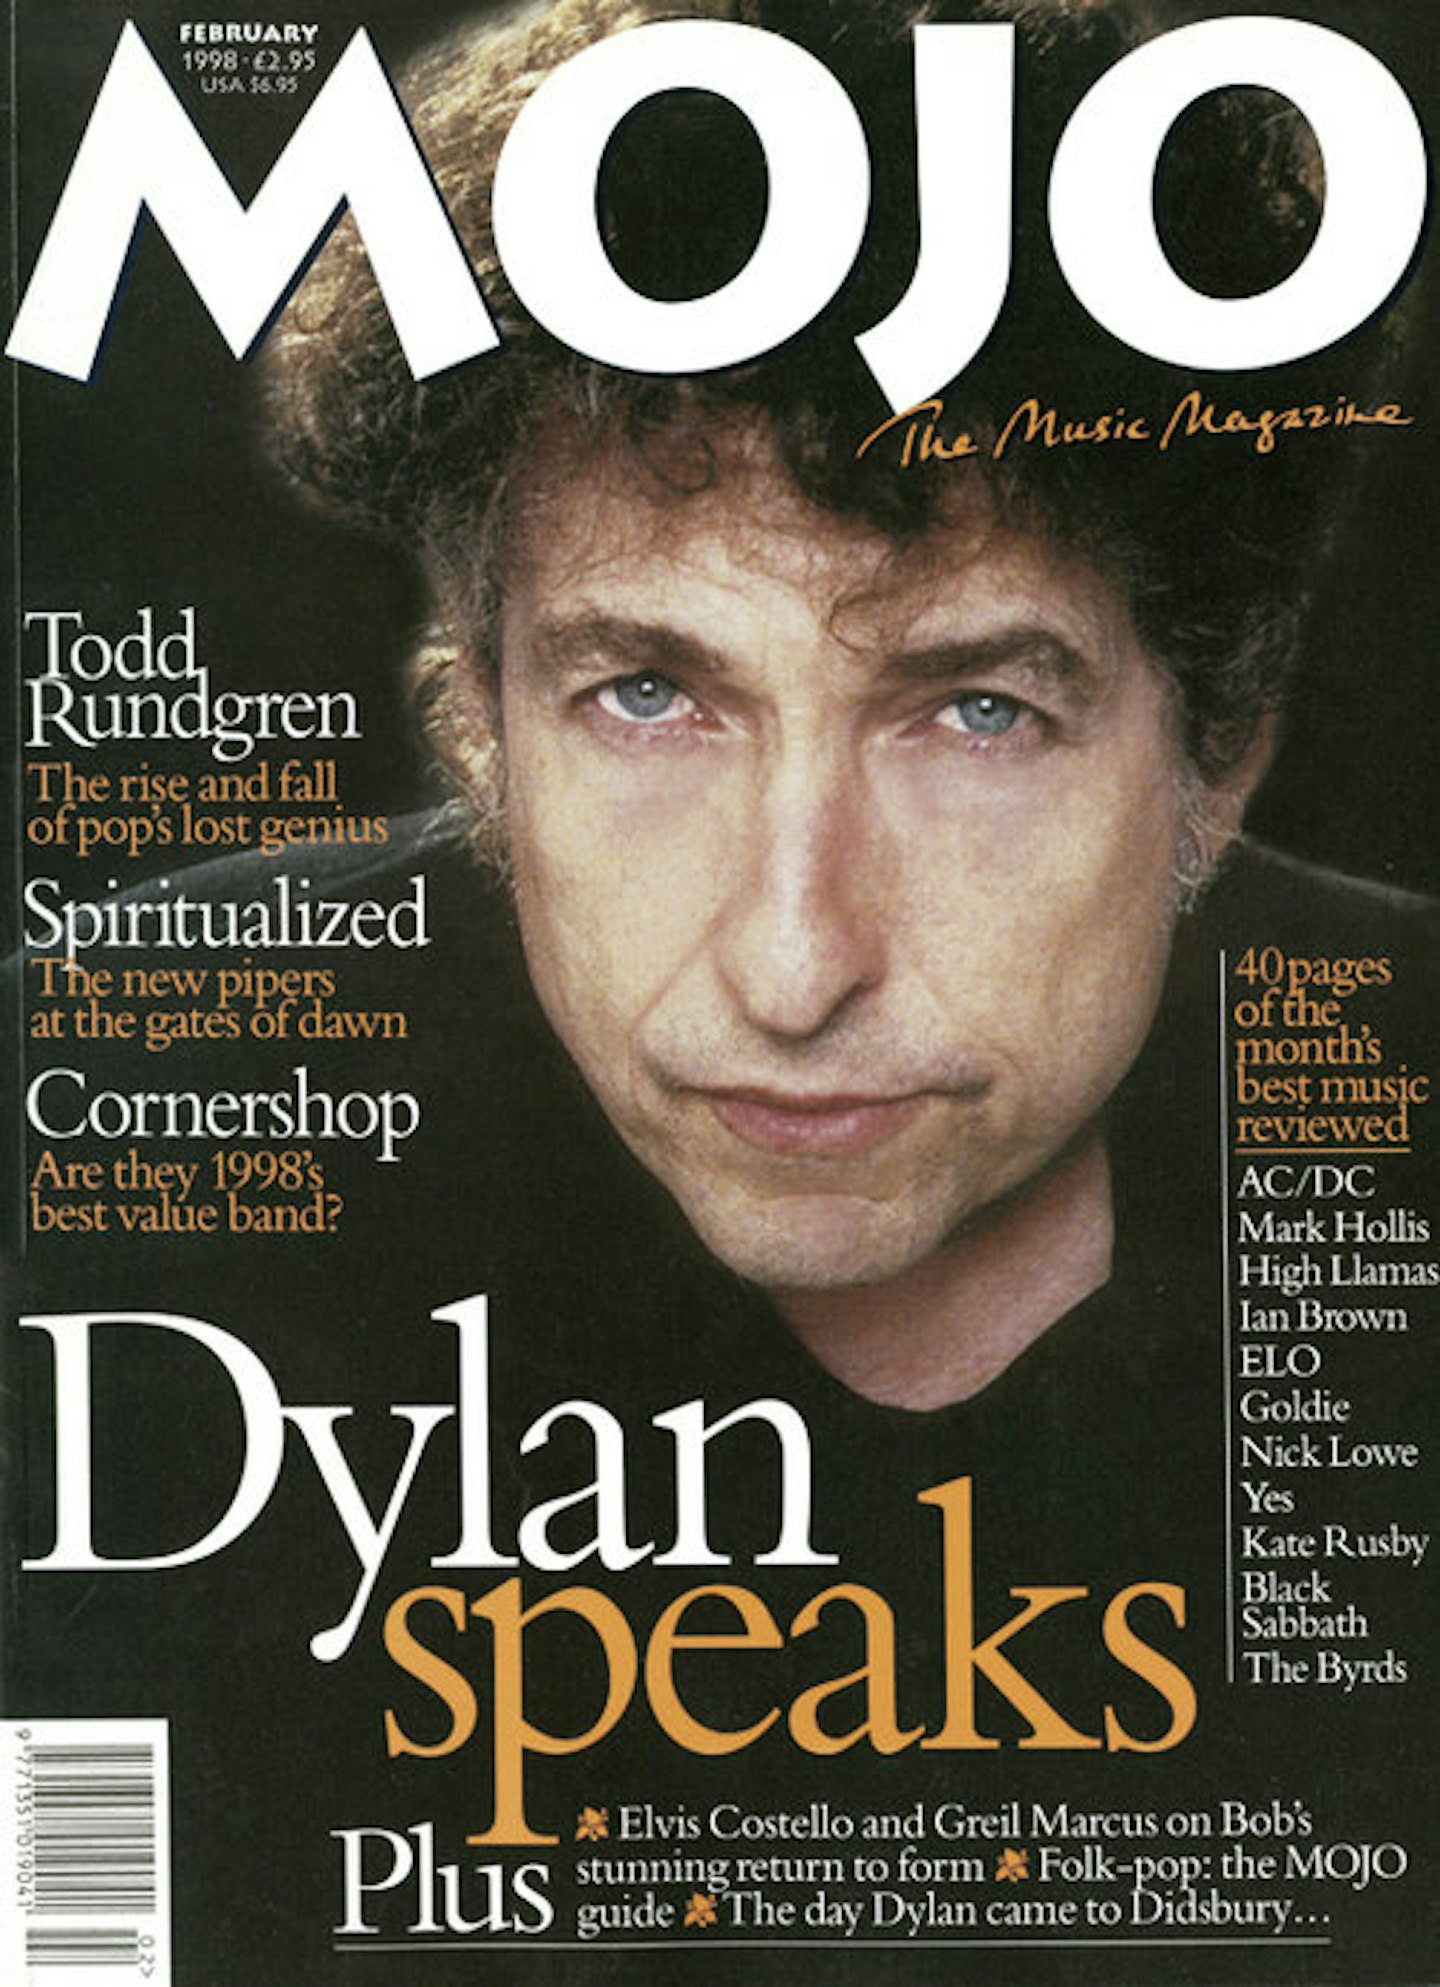 MOJO Issue 51 / February 1998